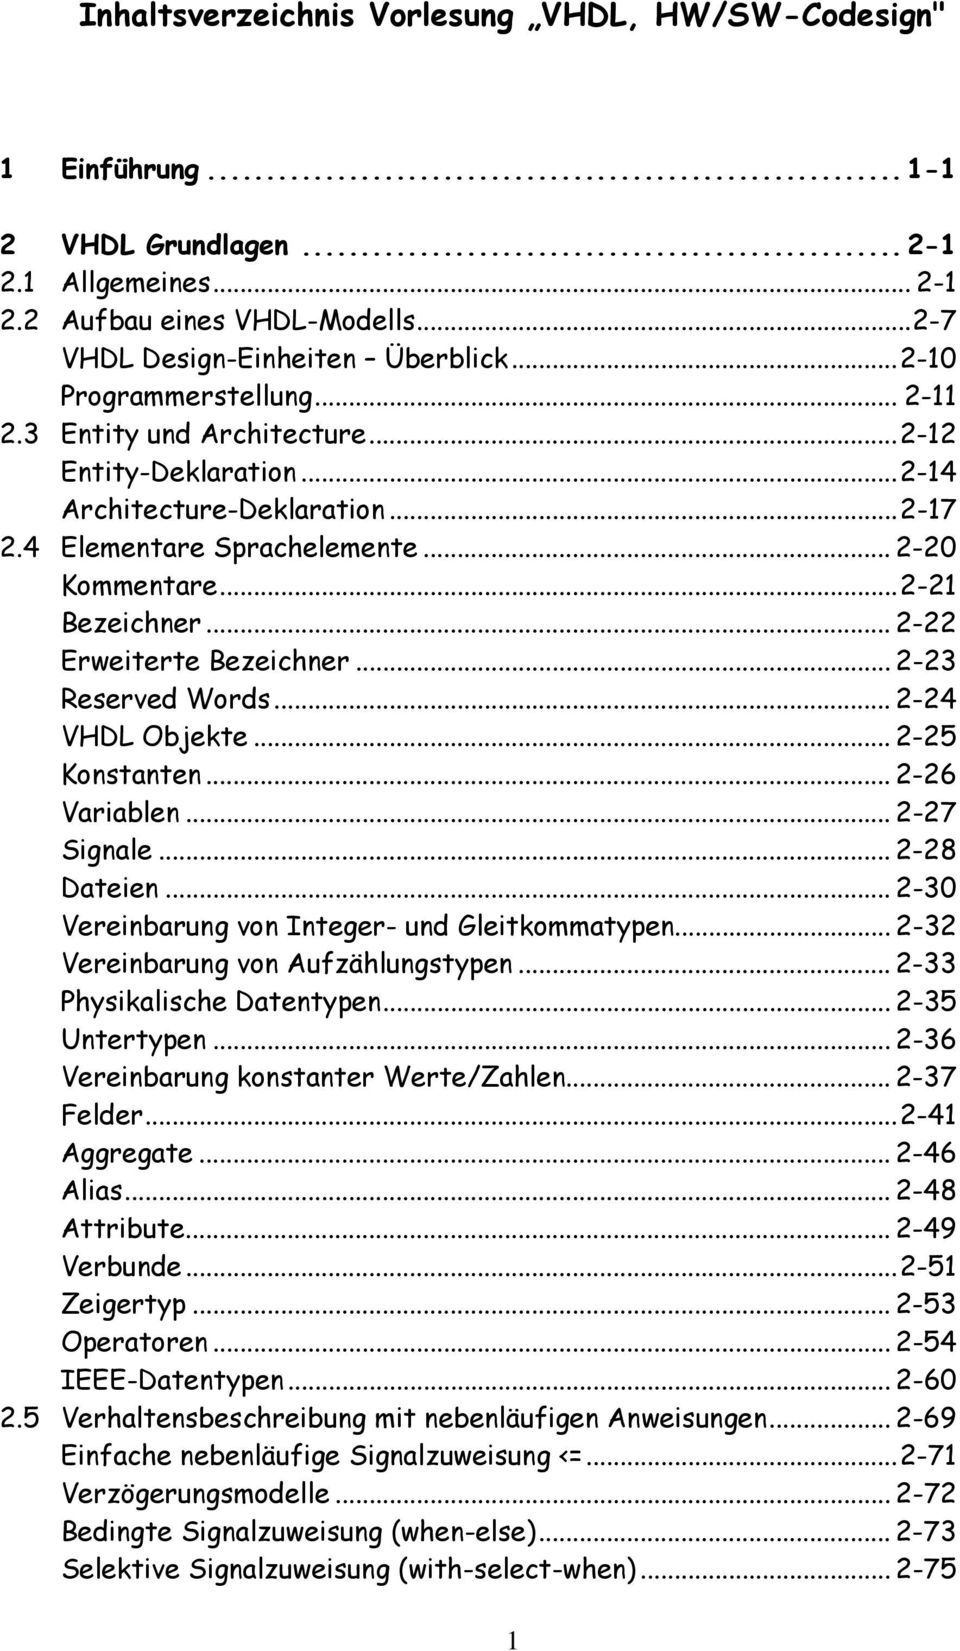 .. 2-22 Erweiterte Bezeichner... 2-23 Reserved Words... 2-24 VHDL Objekte... 2-25 Konstanten... 2-26 Variablen... 2-27 Signale... 2-28 Dateien... 2-30 Vereinbarung von Integer- und Gleitkommatypen.